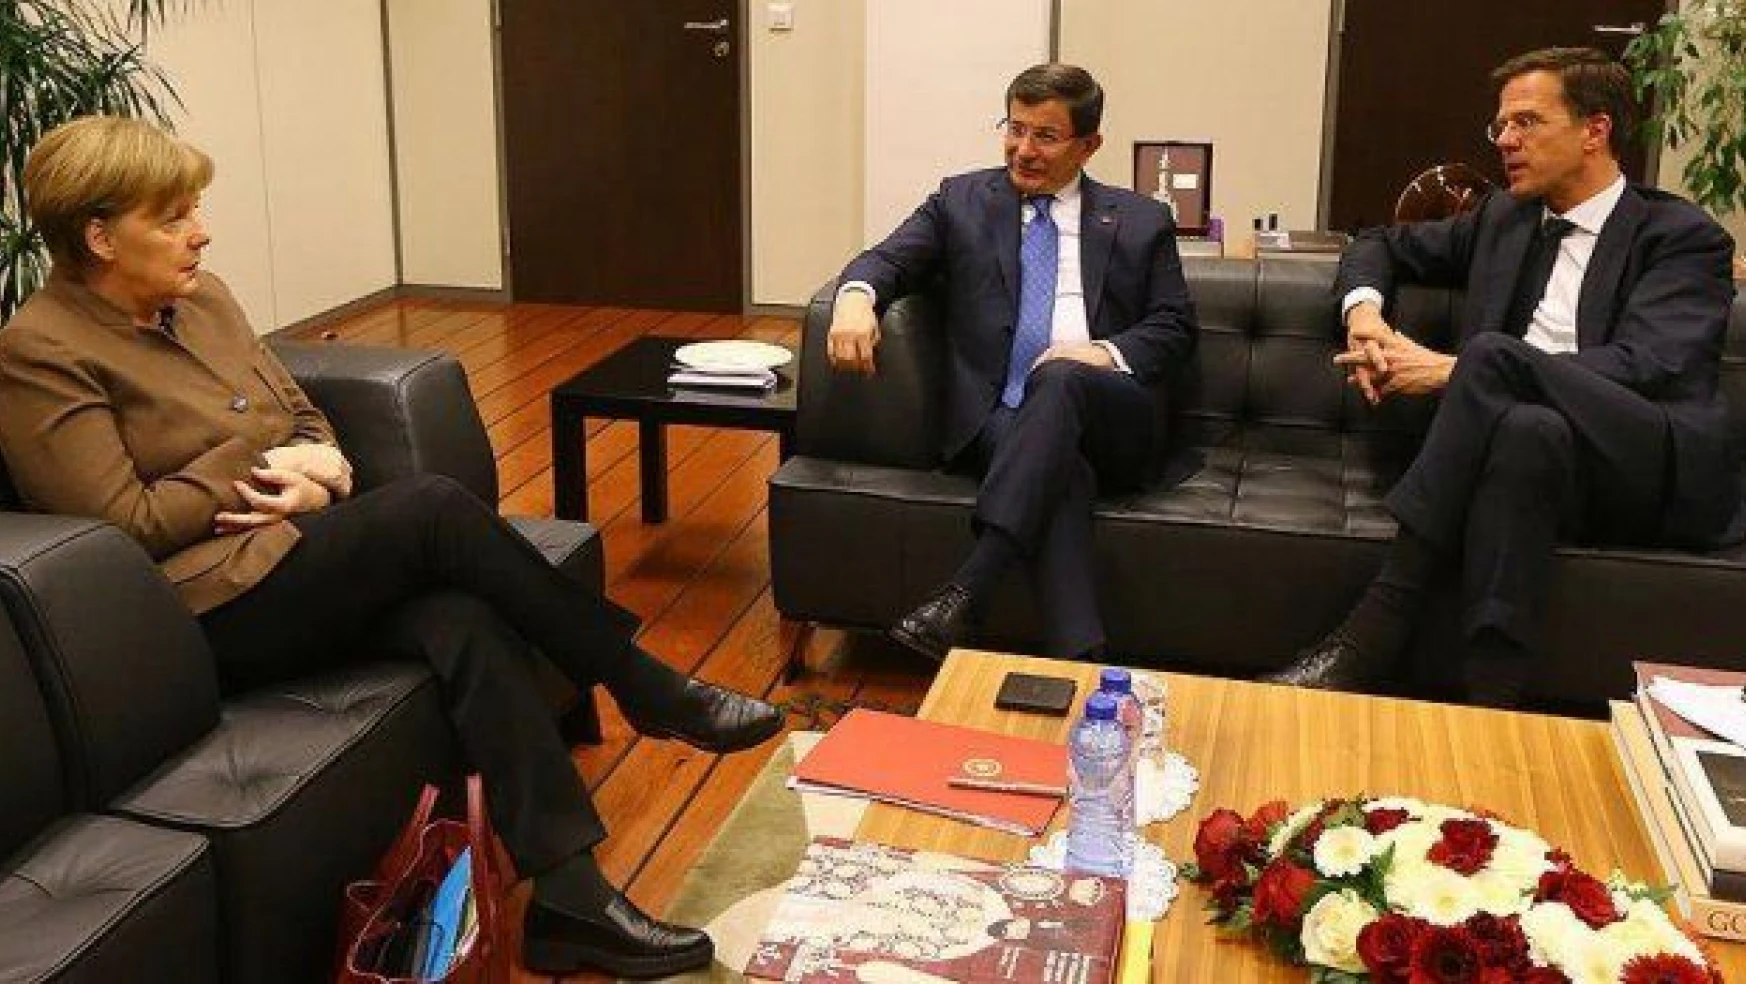 Başbakan Davutoğlu, Merkel ve Rutte ile görüştü